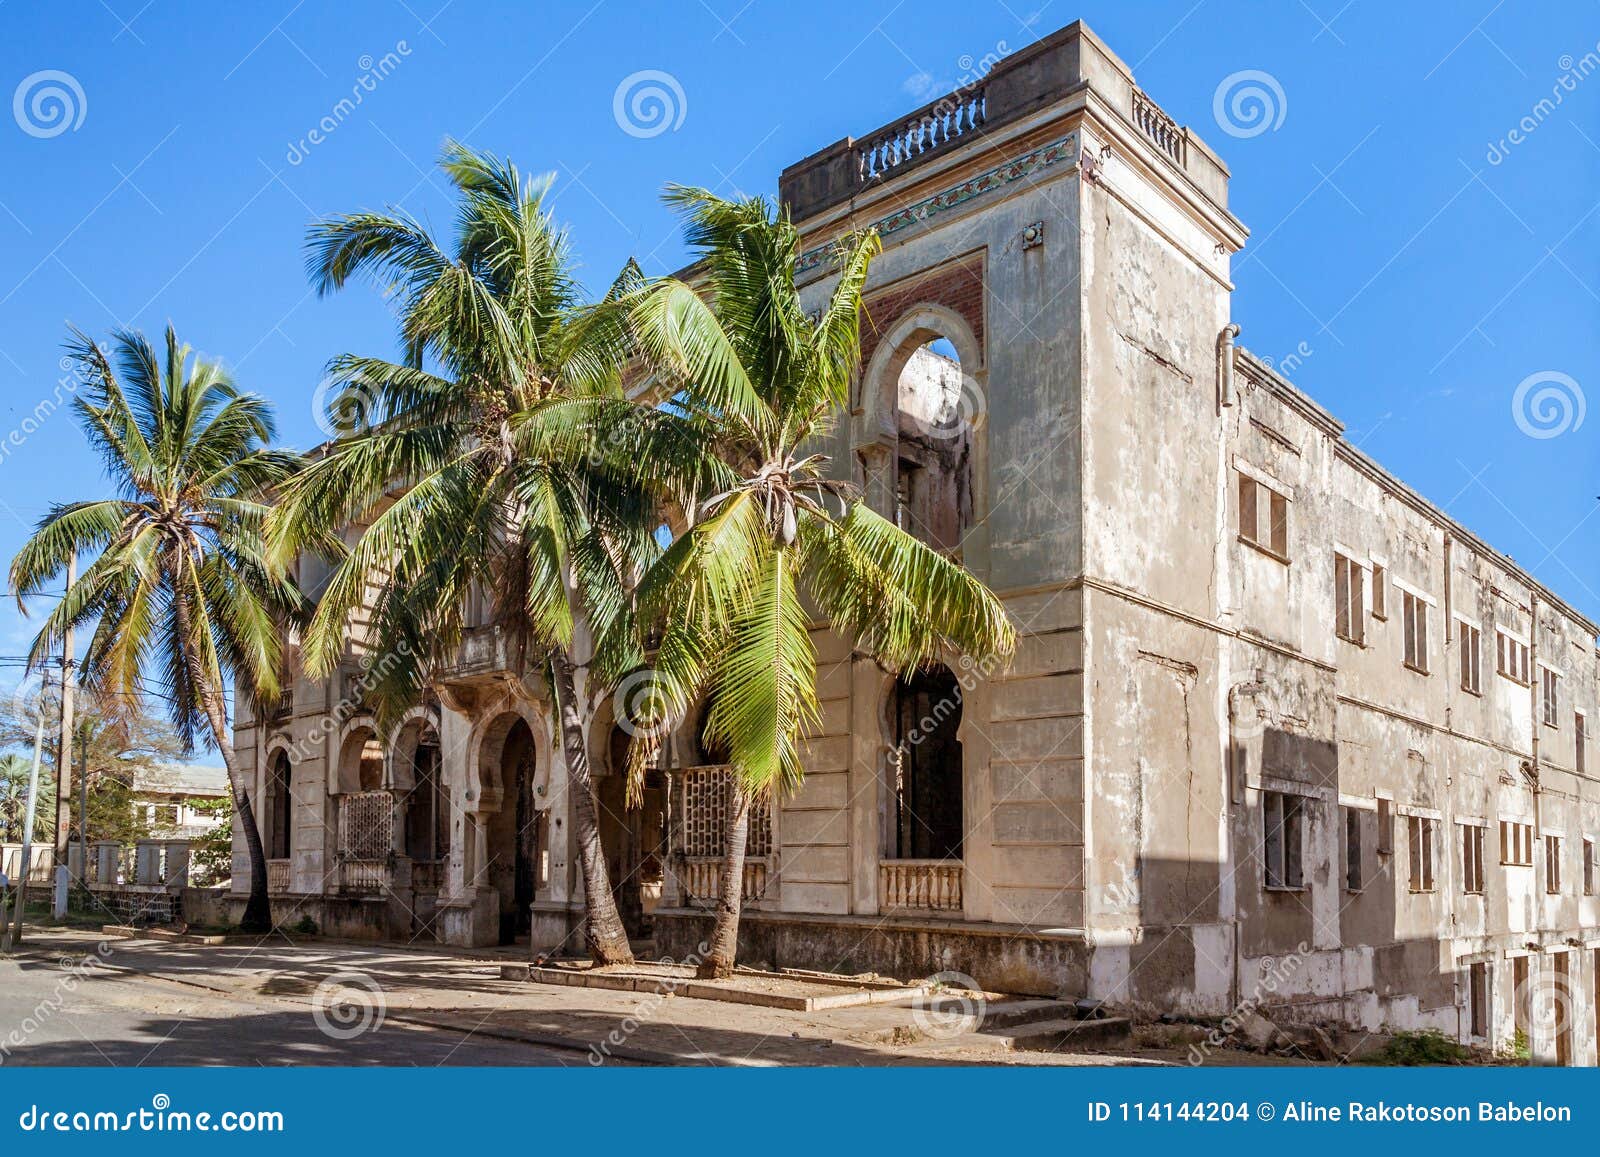 vestige of colonial architecture